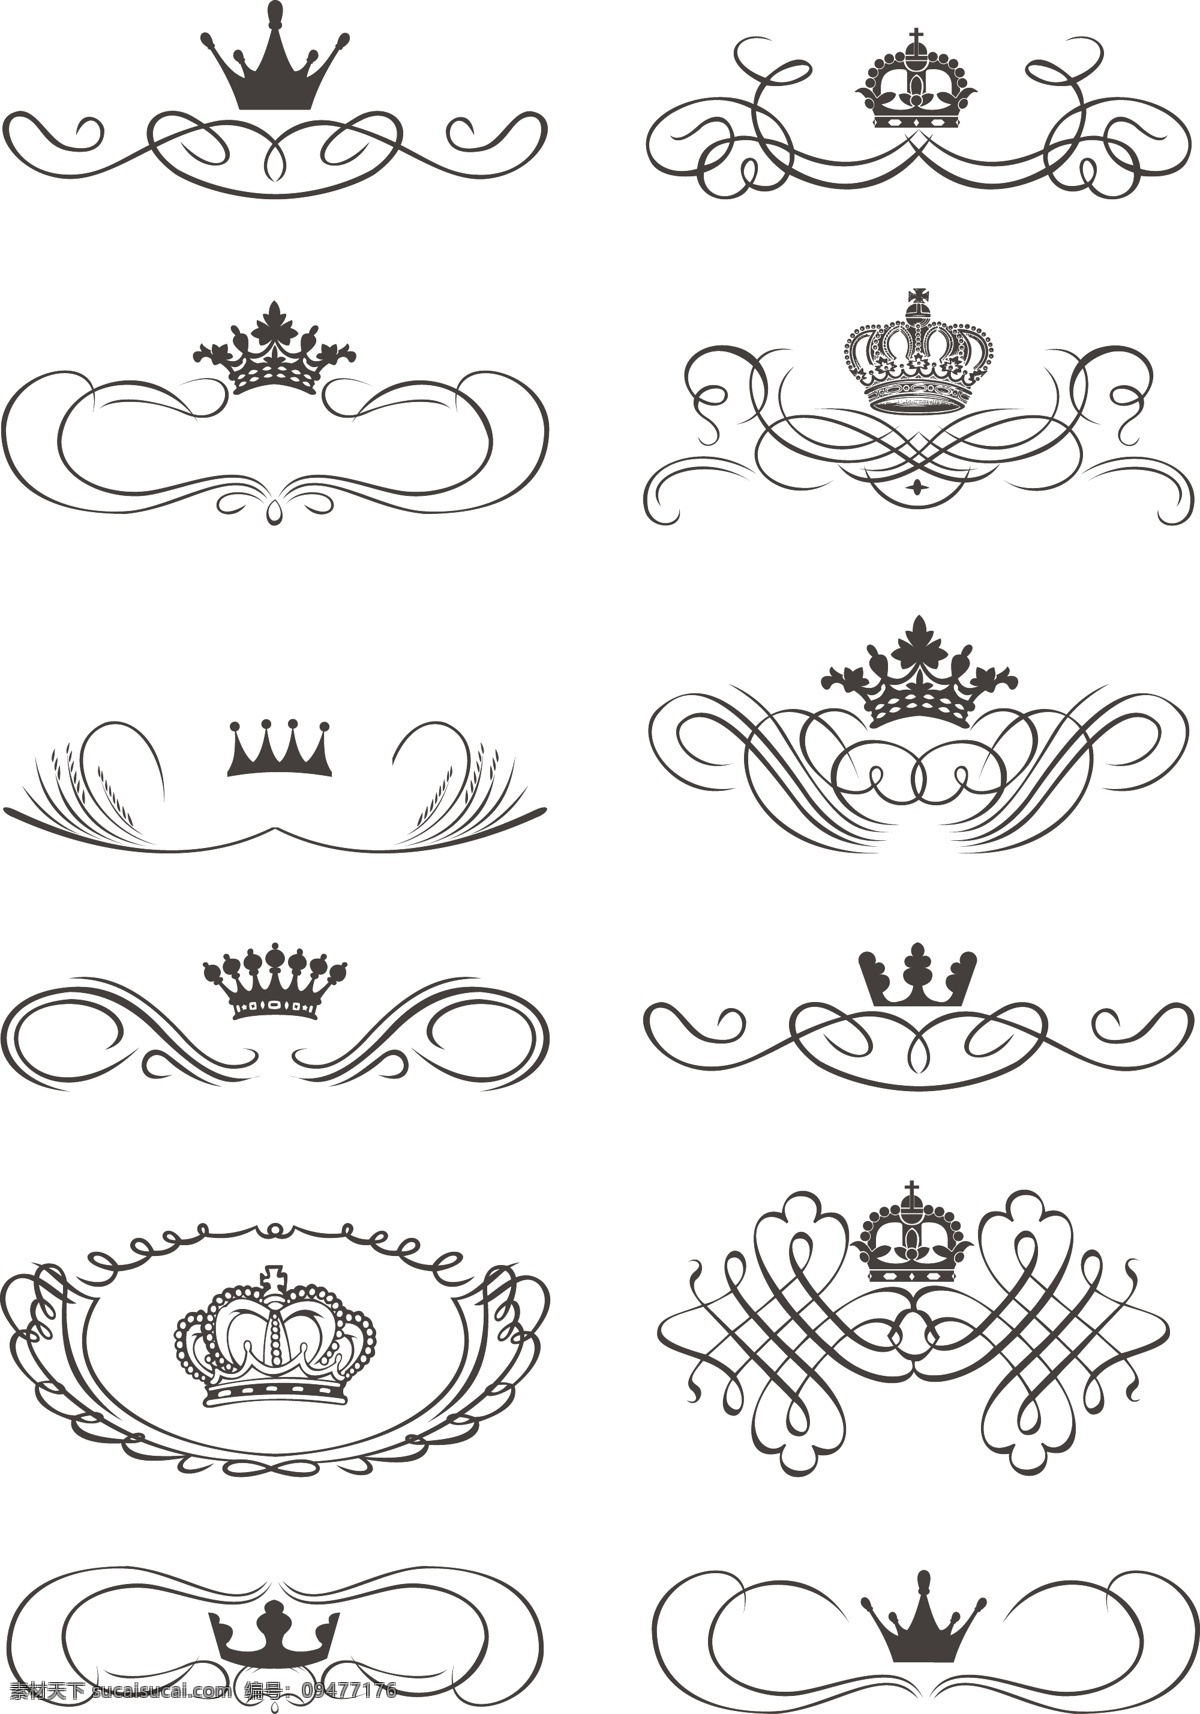 欧式 皇冠 边框 花纹 logo 底纹边框 花边花纹